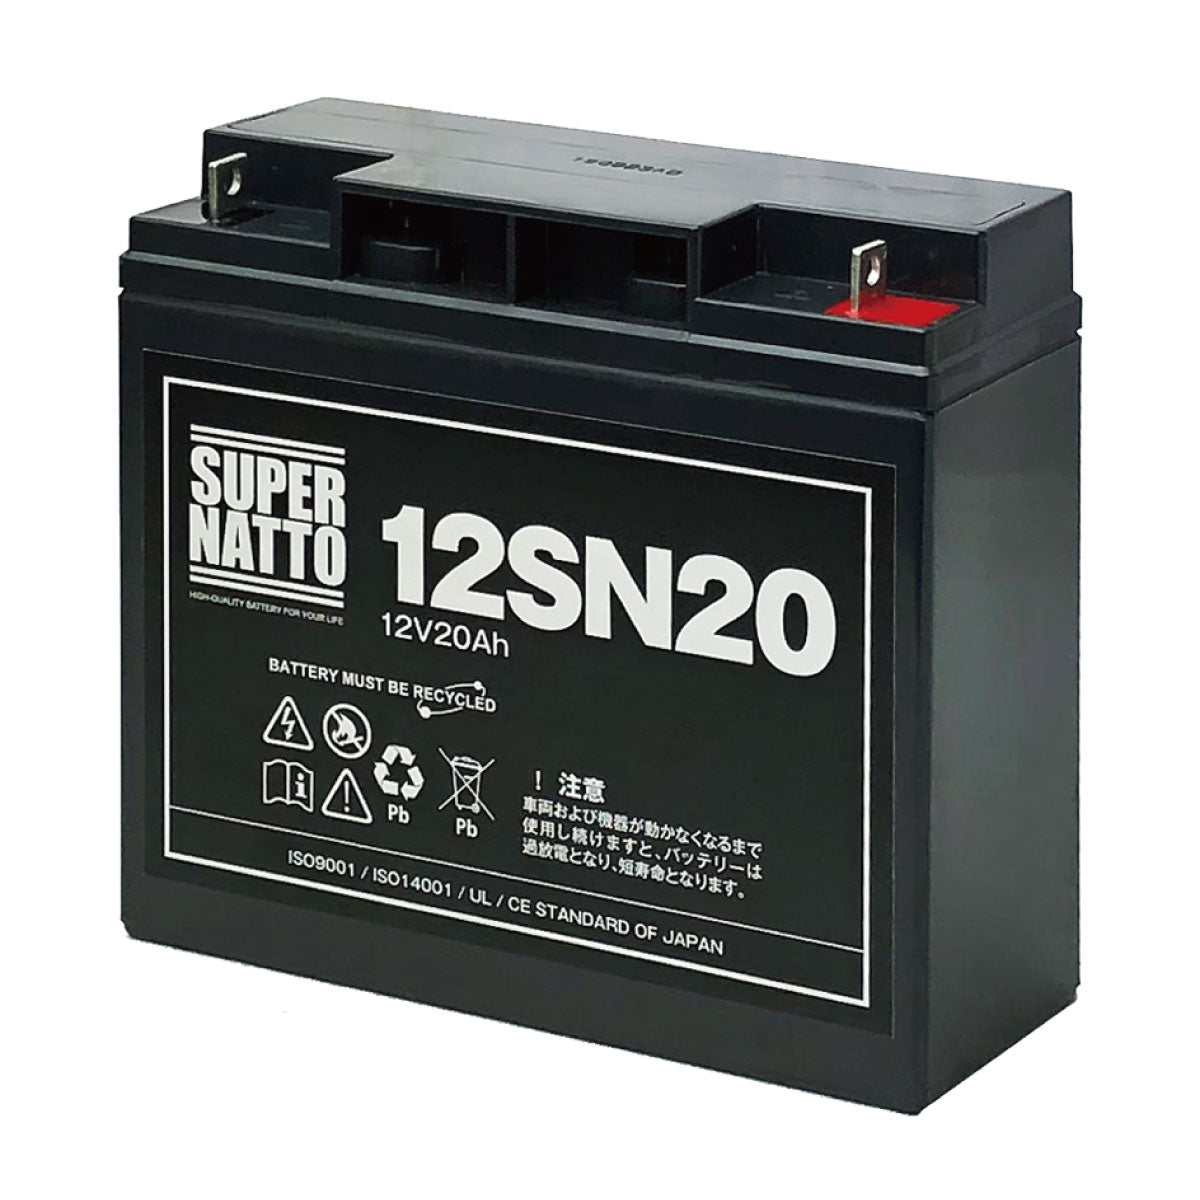 スーパーナット 12SN20 サイクルバッテリー – バッテリーストア.com